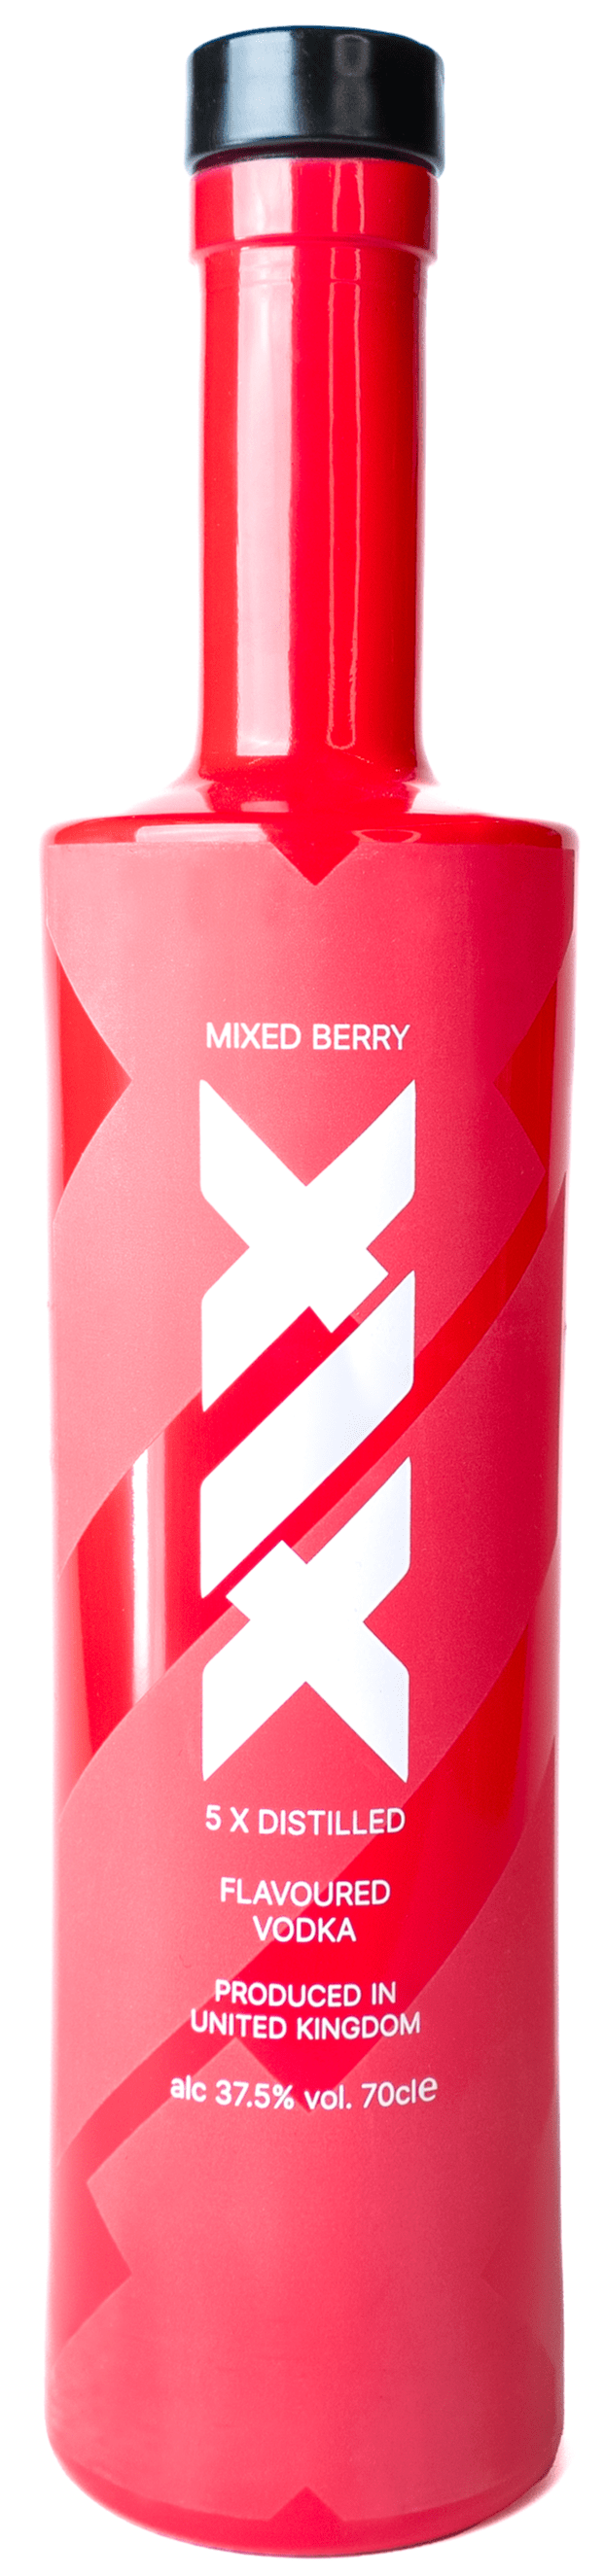 XIX Mixed Berry Vodka 70cl